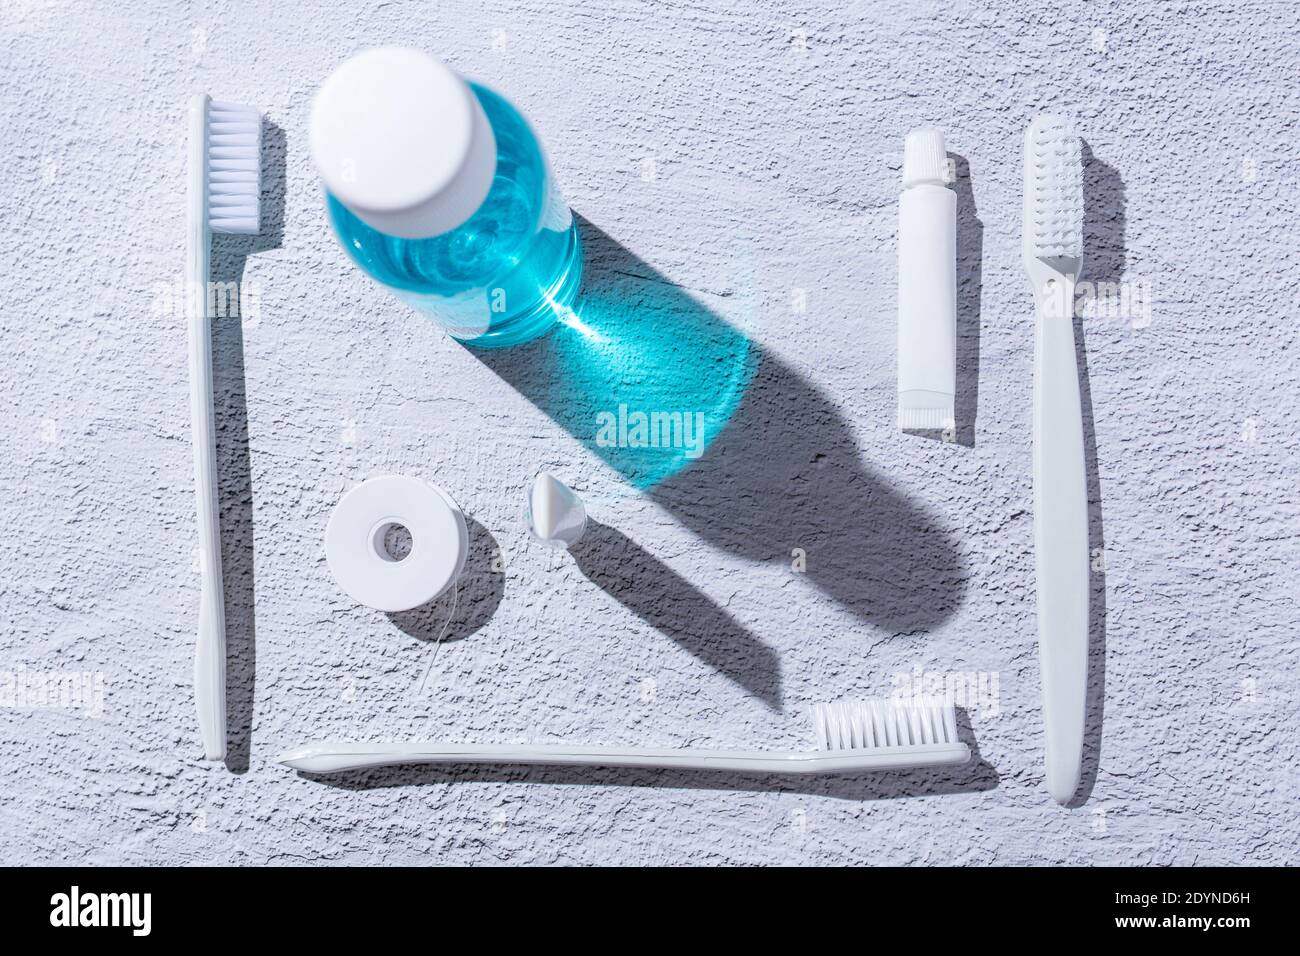 Accessoires d'hygiène dentaire personnels. Rince-bouche, brosse à dents, dentifrice et fil dentaire. Banque D'Images